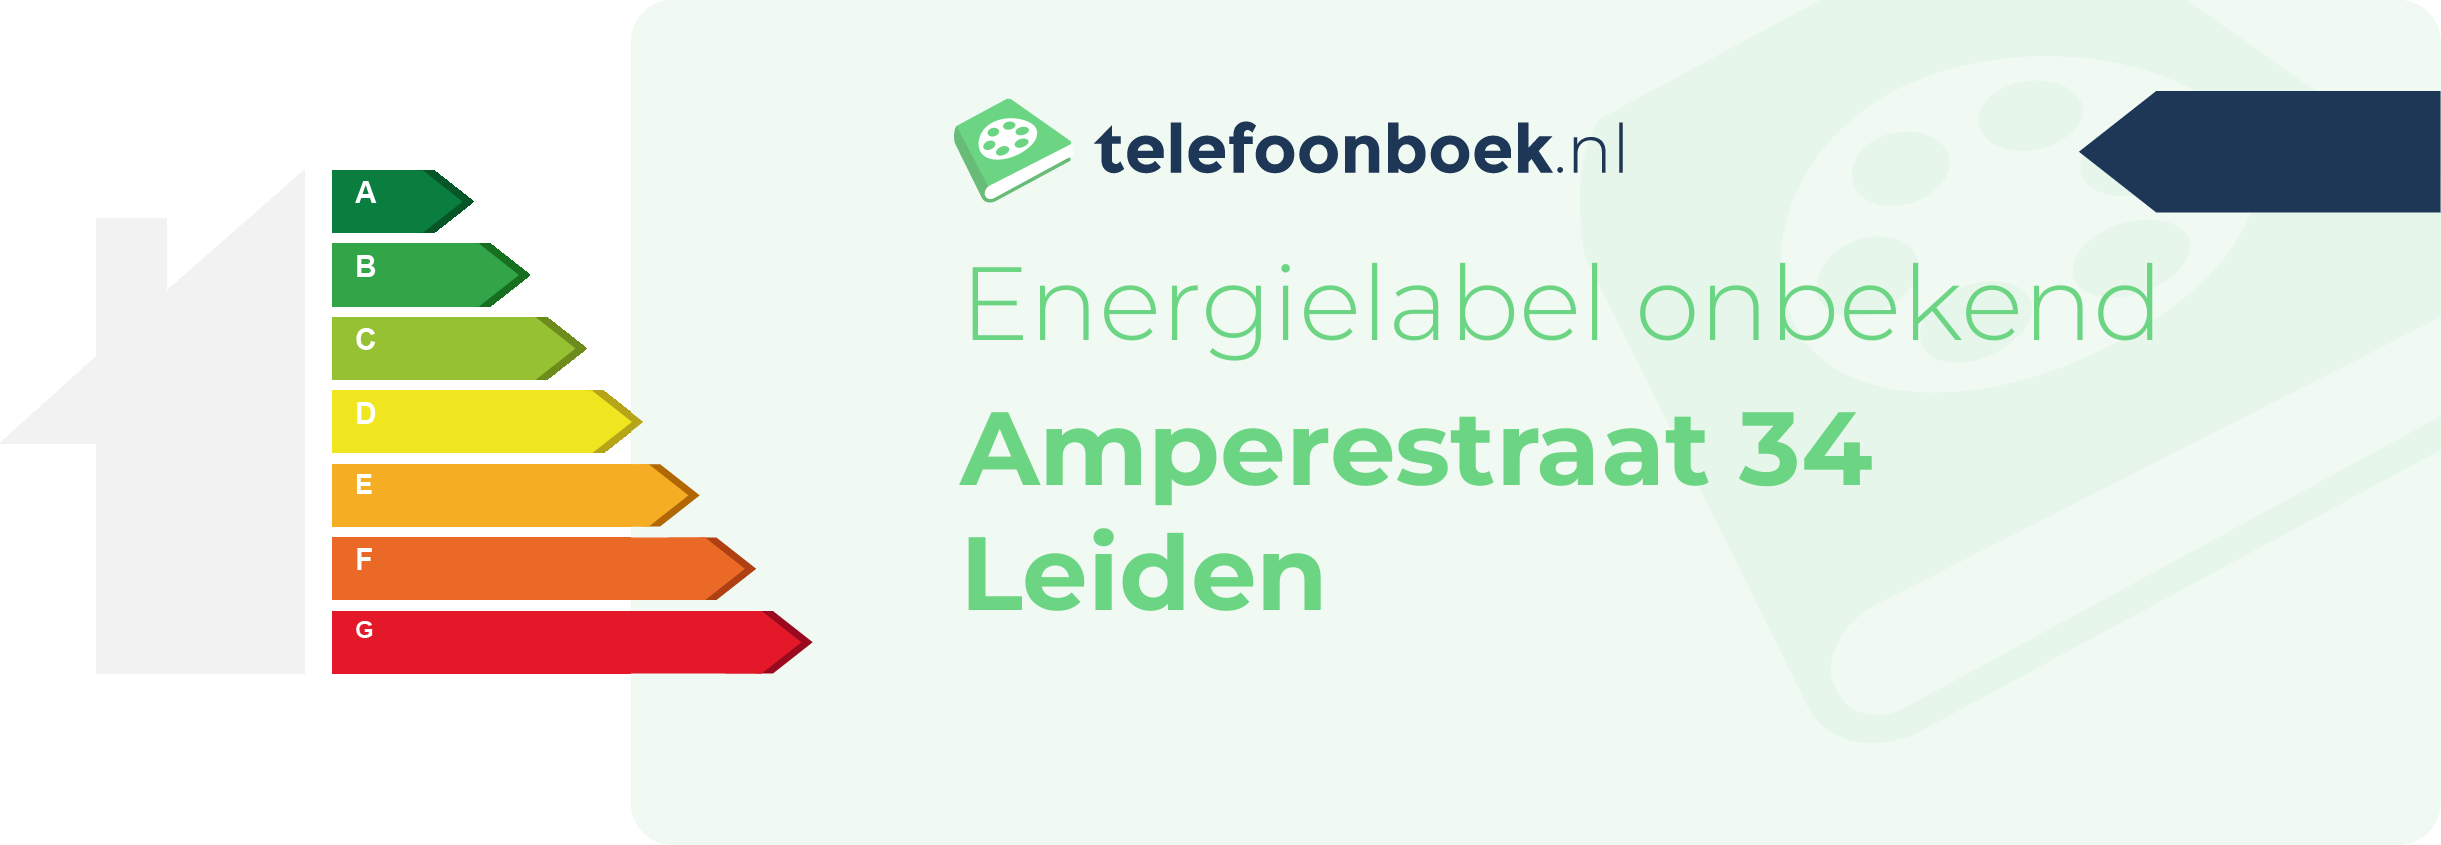 Energielabel Amperestraat 34 Leiden